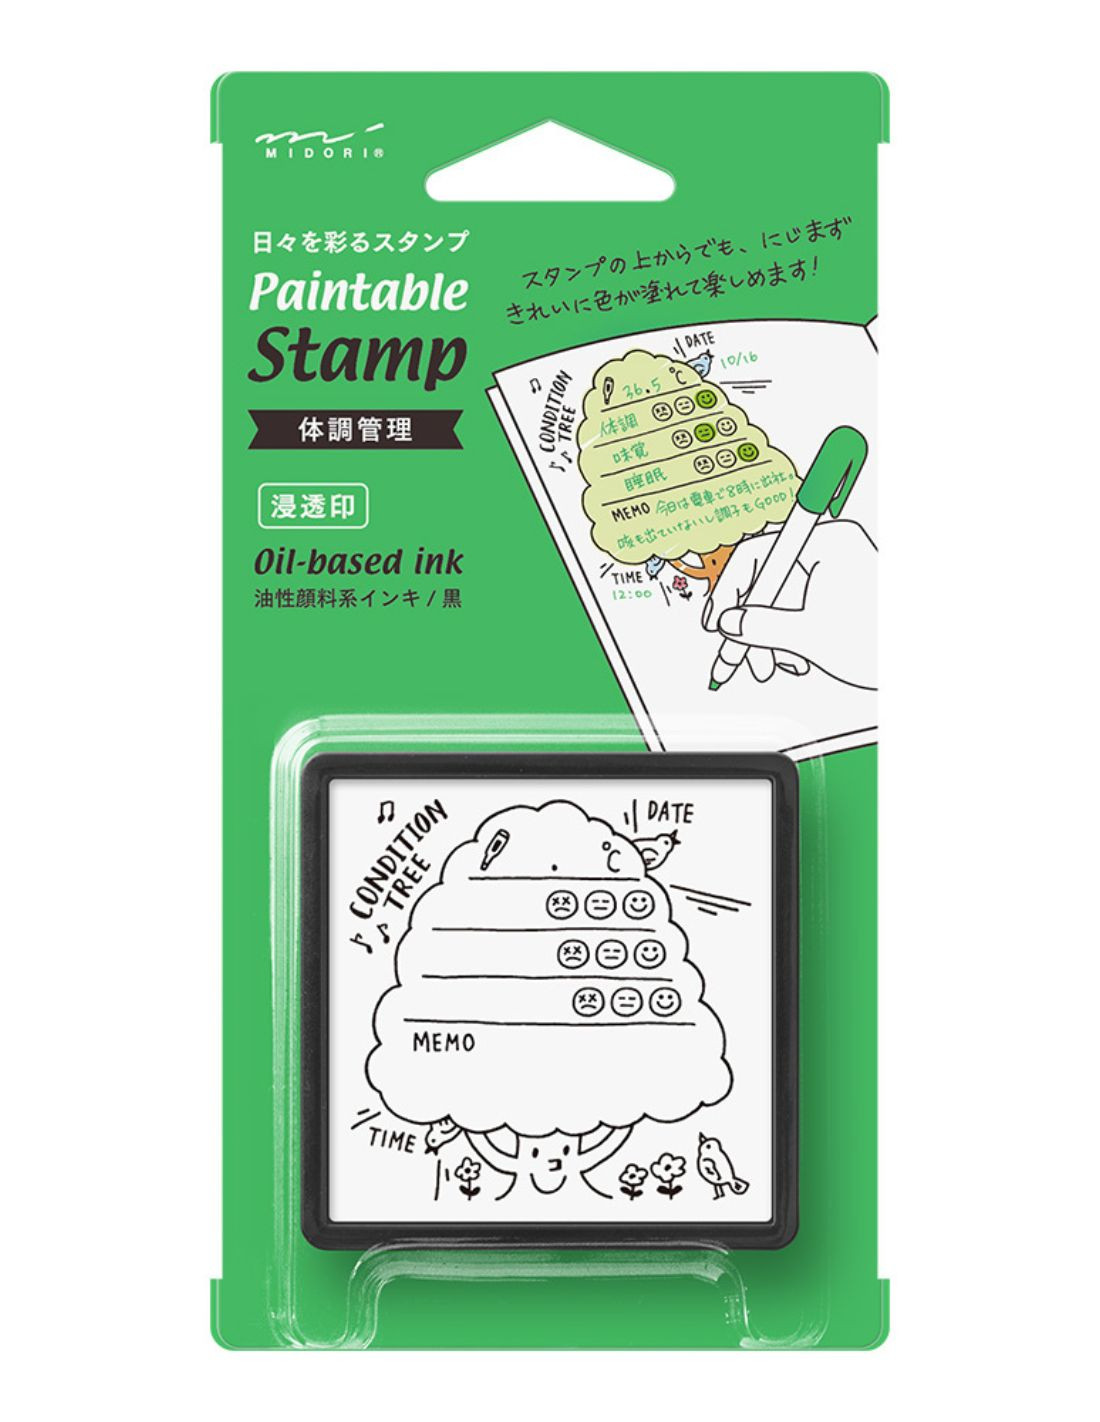 Tampon pré-encré Paintable Stamp - Condition Tree - Midori|Papeterie Makkura